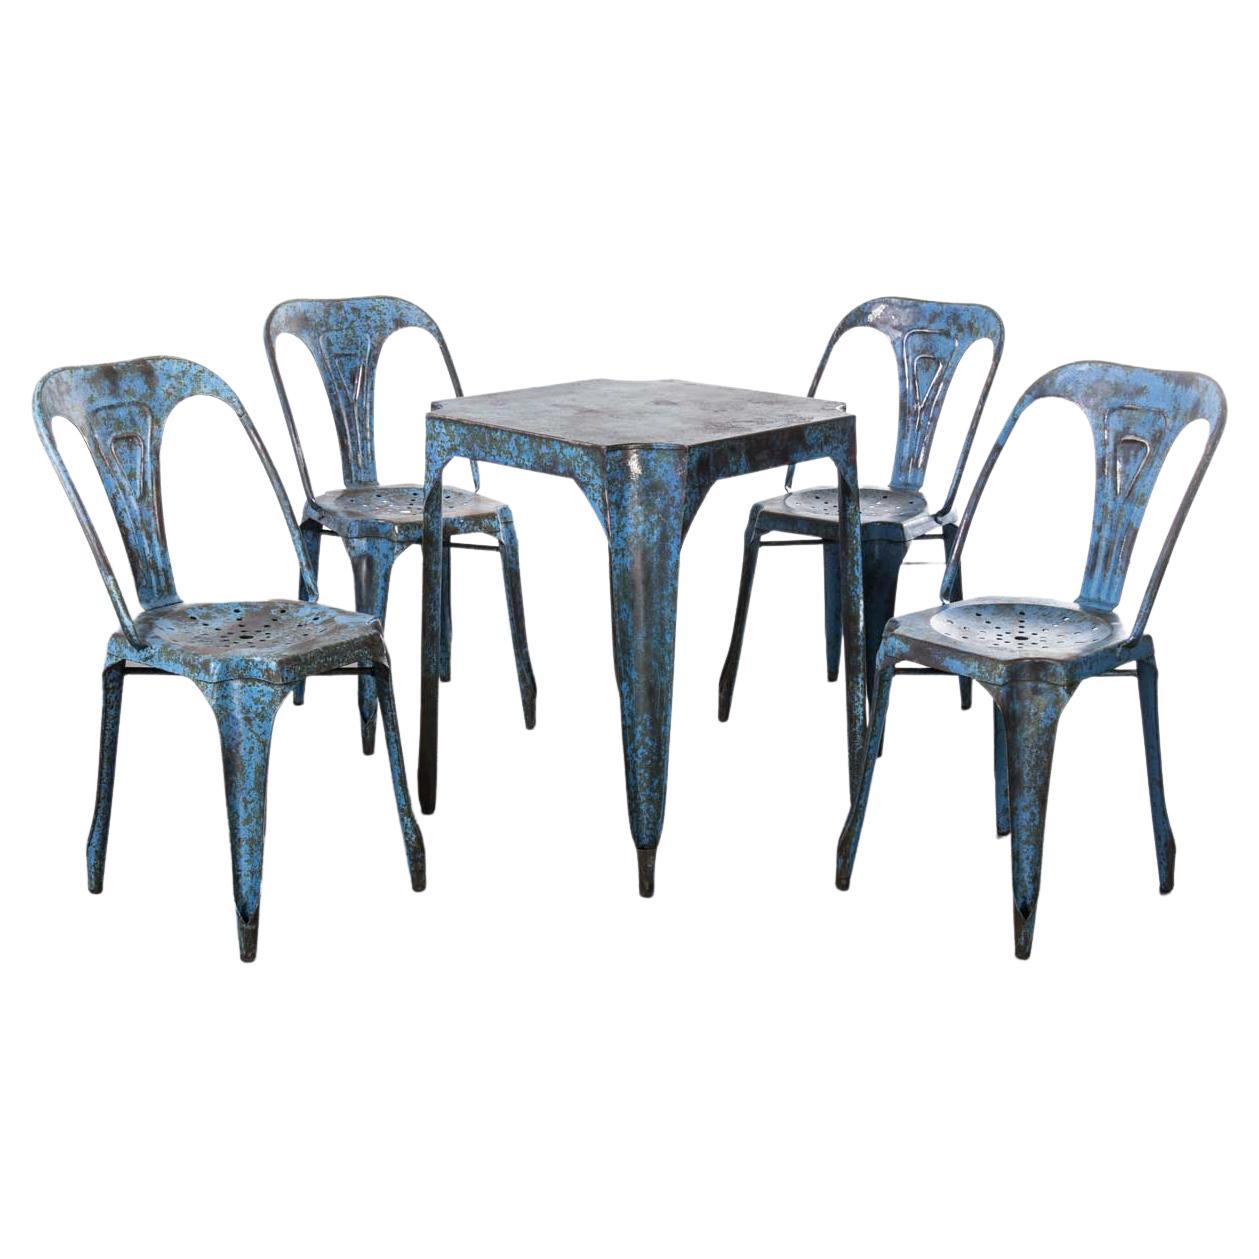 Originales französisches Multipl's-Tisch- und Stuhlset aus den 1950er Jahren - Blau